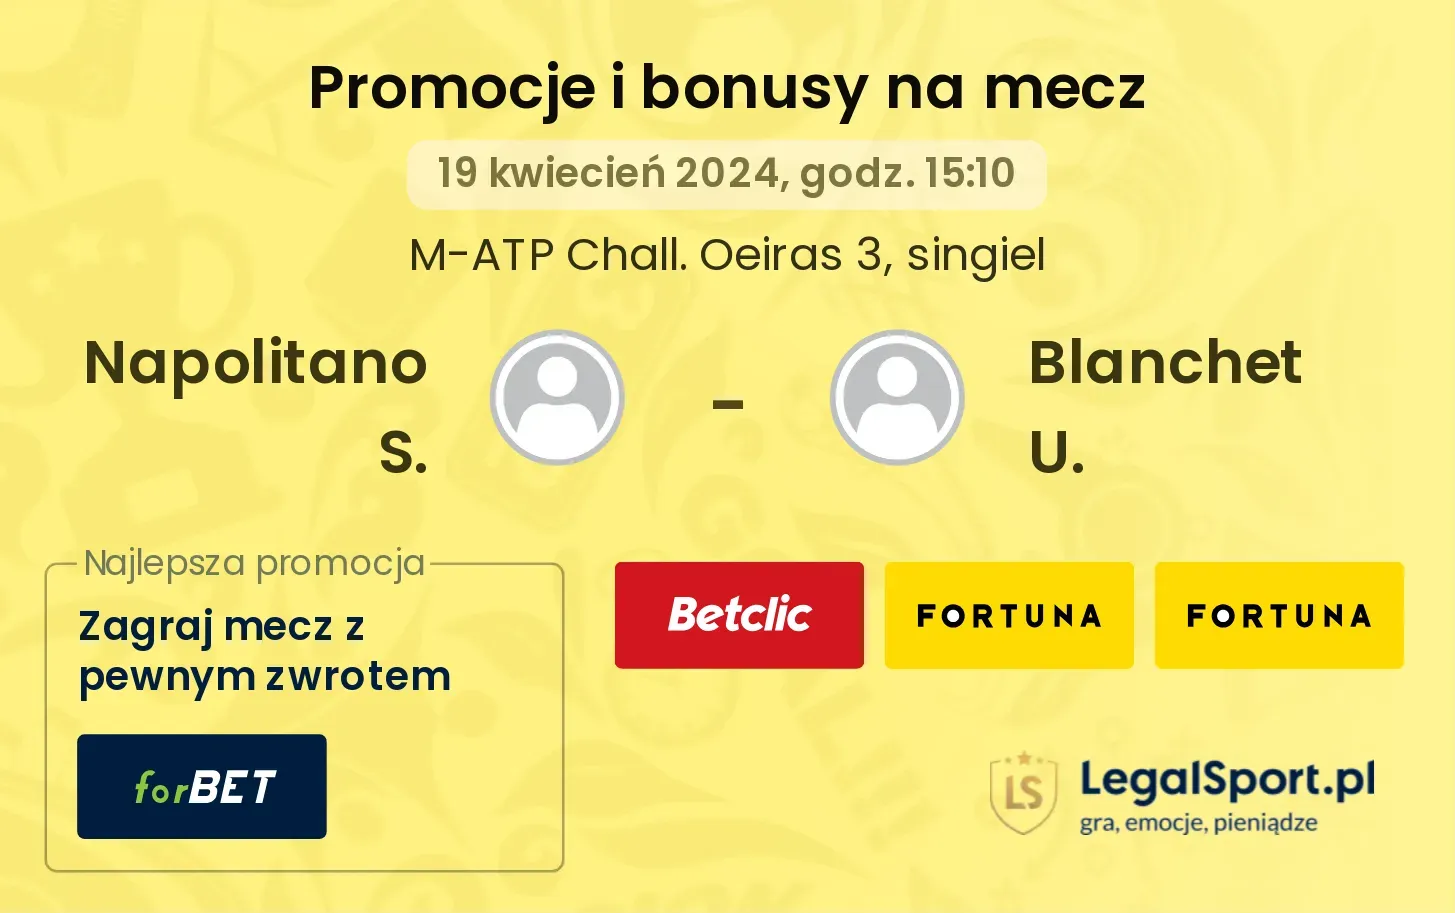 Napolitano S. - Blanchet U. promocje bonusy na mecz